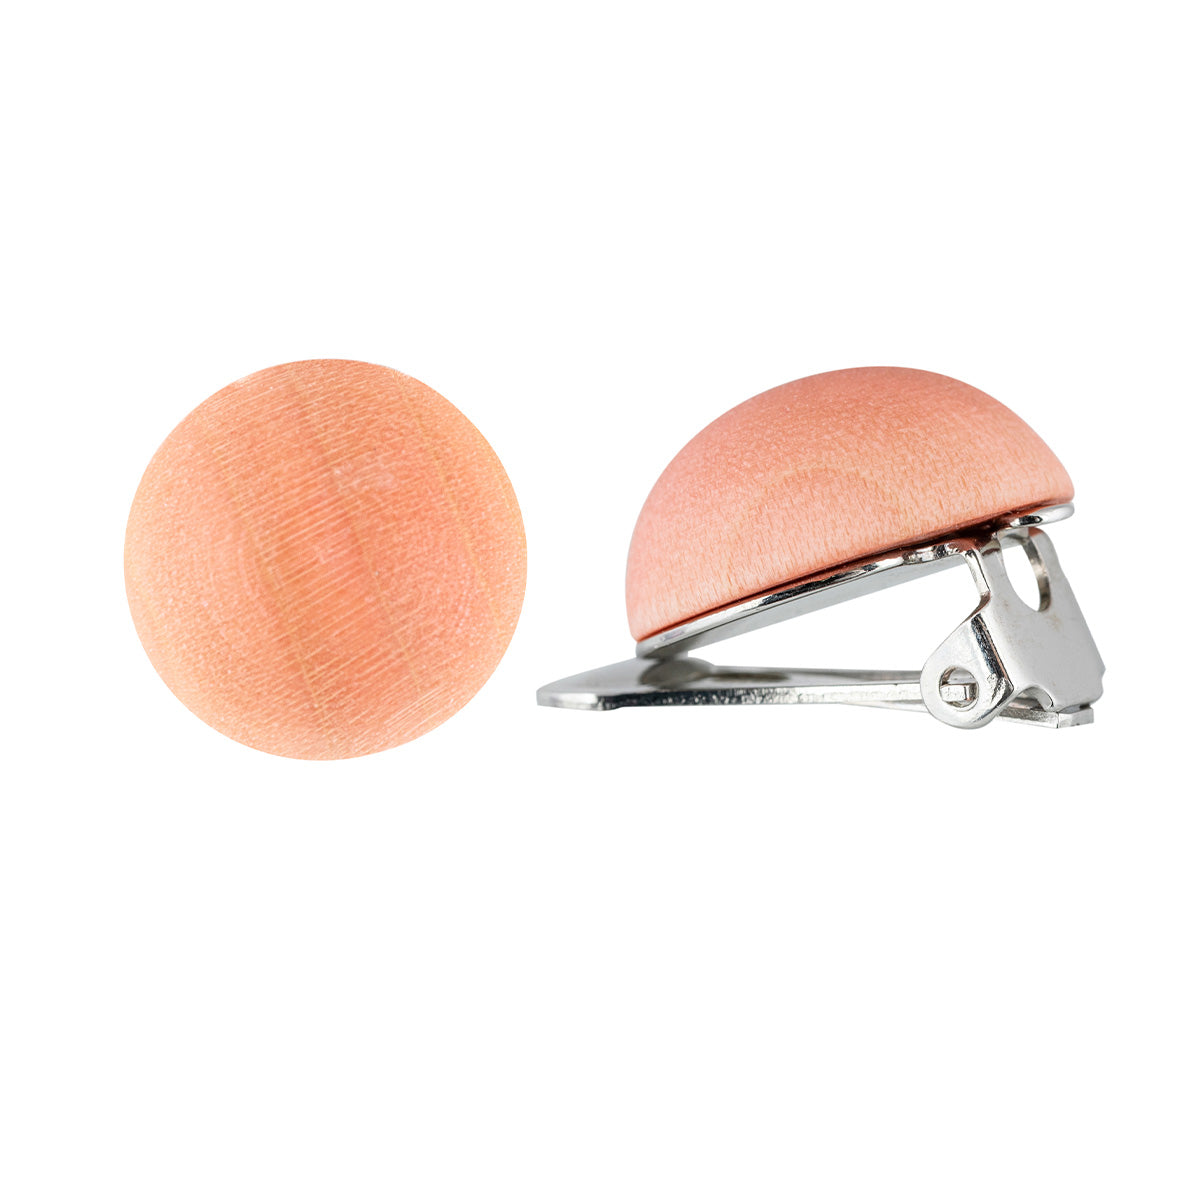 Nappi clip-on earrings, orange